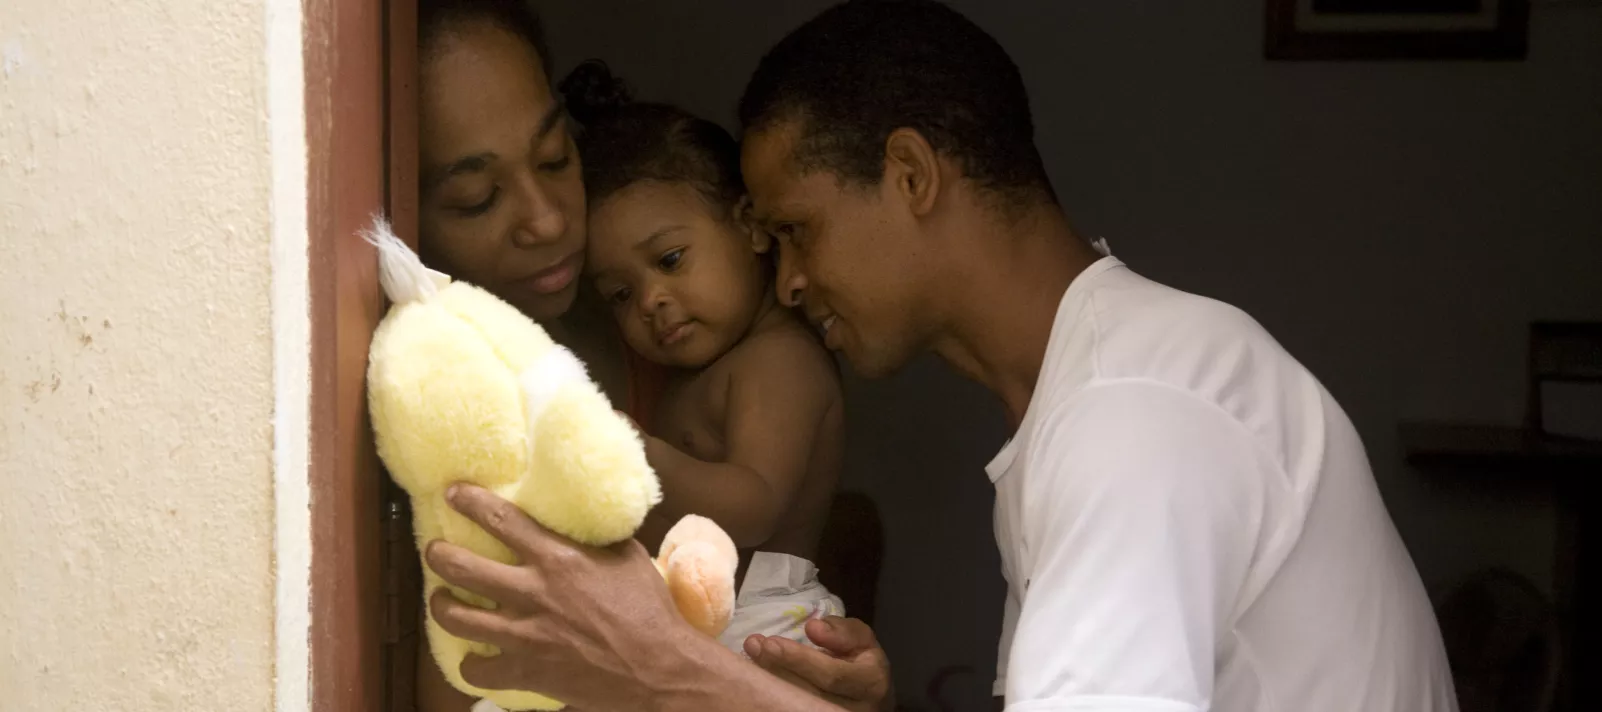 um pai mostra um ursinho de pelúcia amarelo para sua filha bebê que está no colo da mãe. a cena é toda muito carinhosa.